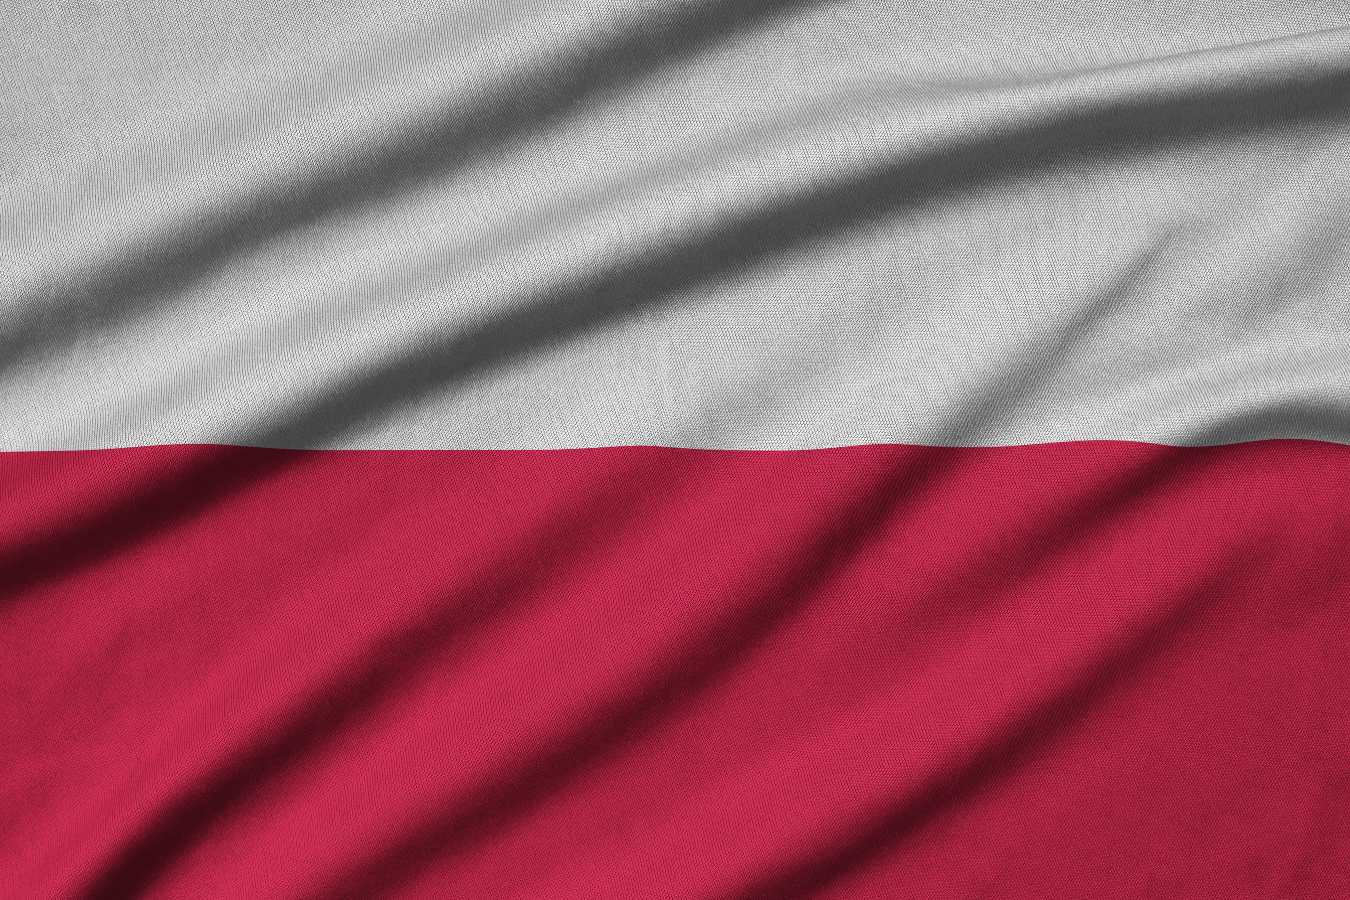 Życzenia na dzień niepodległości 11 listopada. Piękne i wzruszające słowa dla niepodległej Polski!